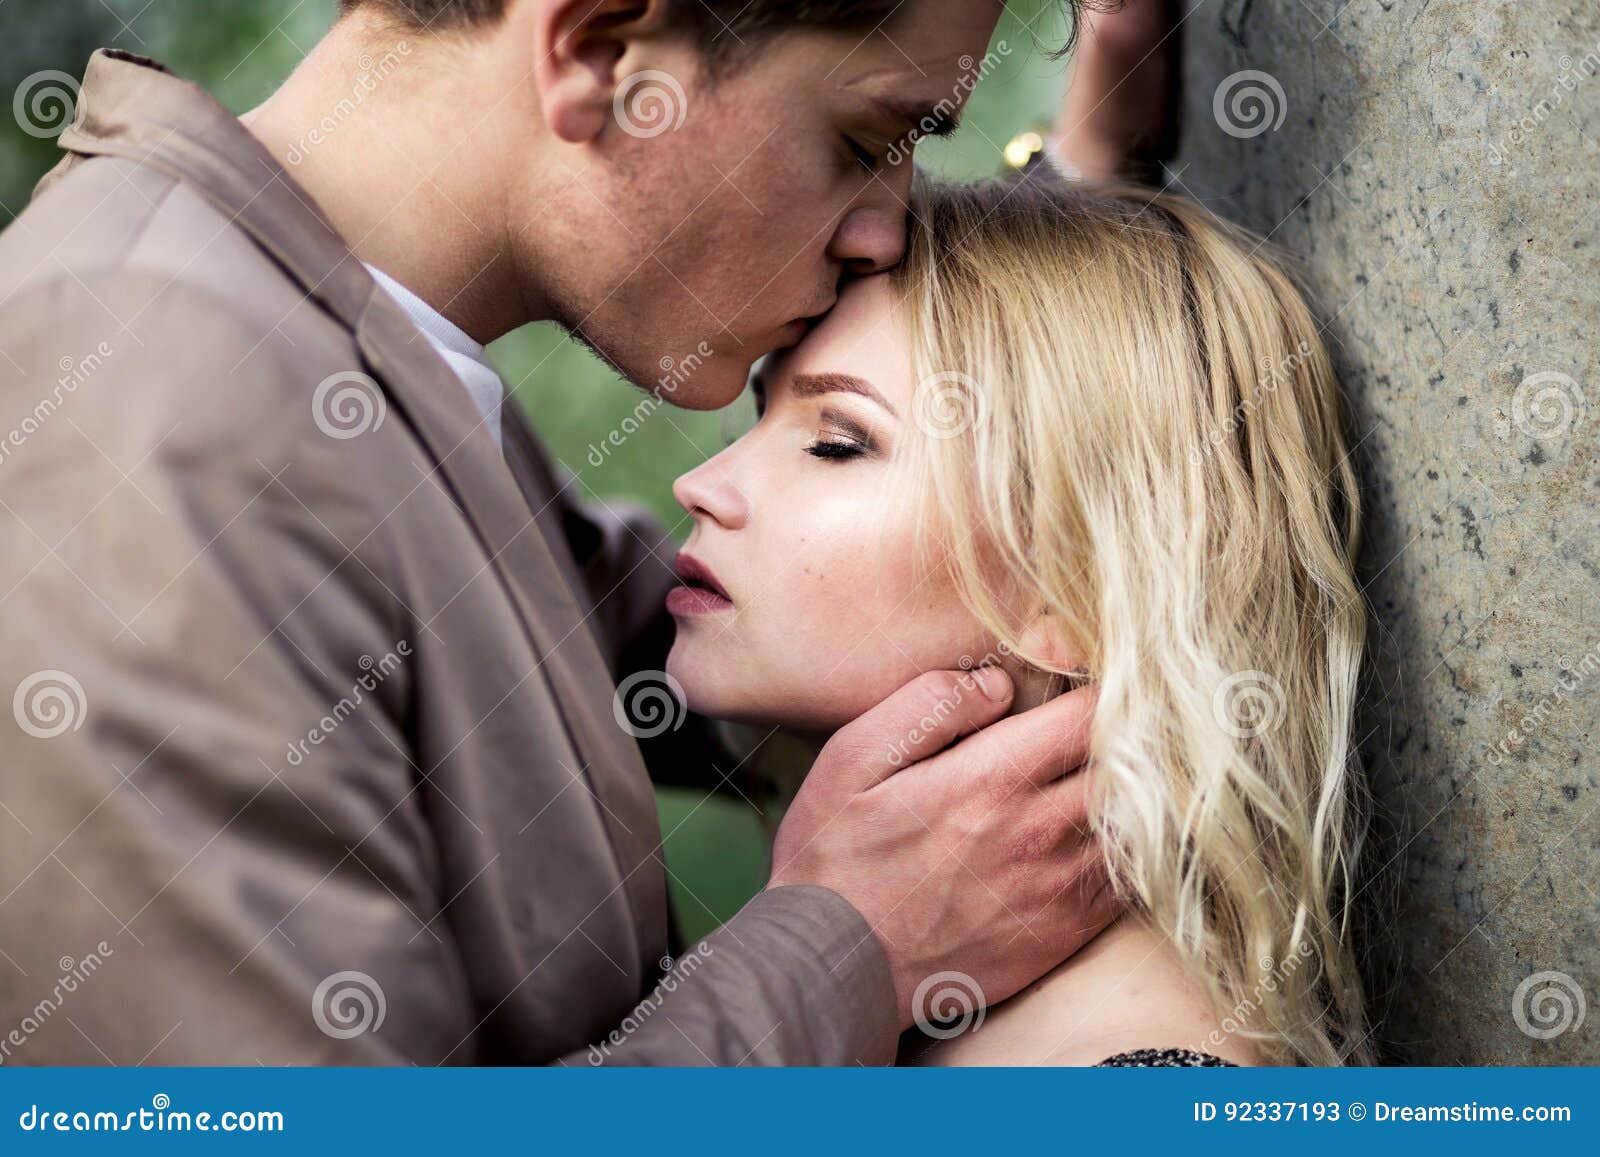 Можно целовать в лоб. Поцелуй в лоб. Человек целует другого в лоб. Мужчина целует женщину в лоб. Женщина целует женщину в лоб.